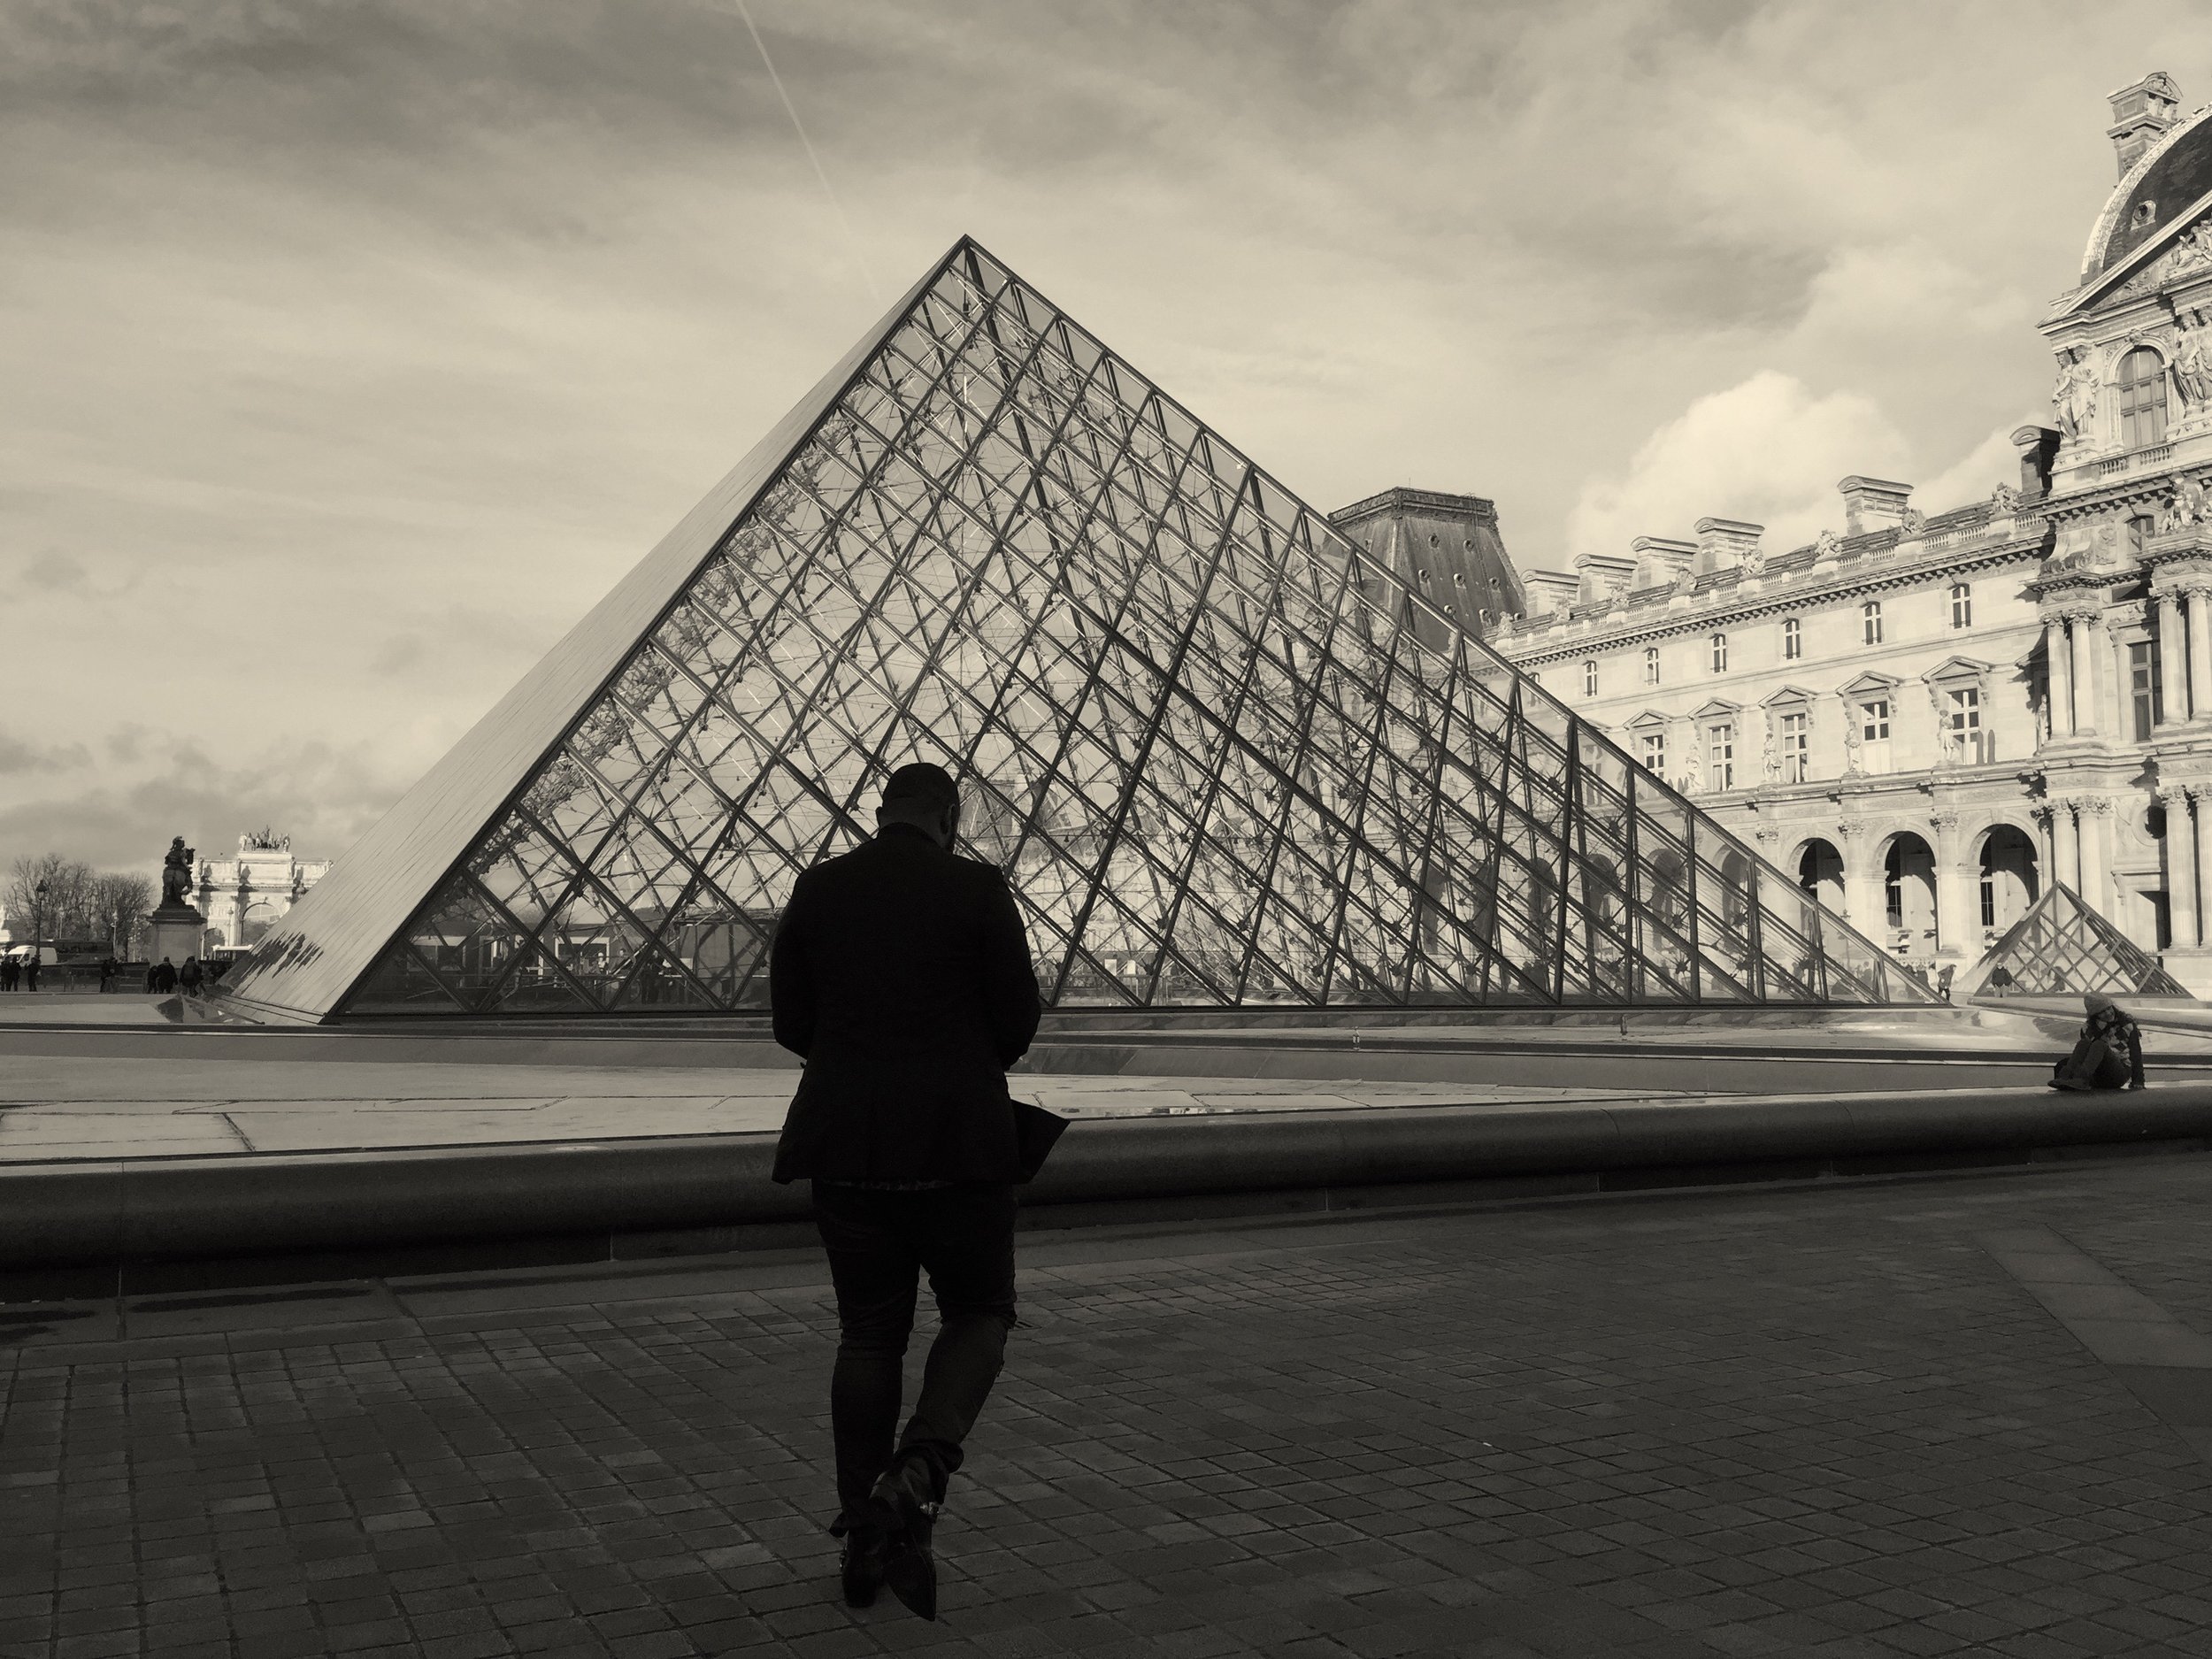 The Louvre Museum of Paris France